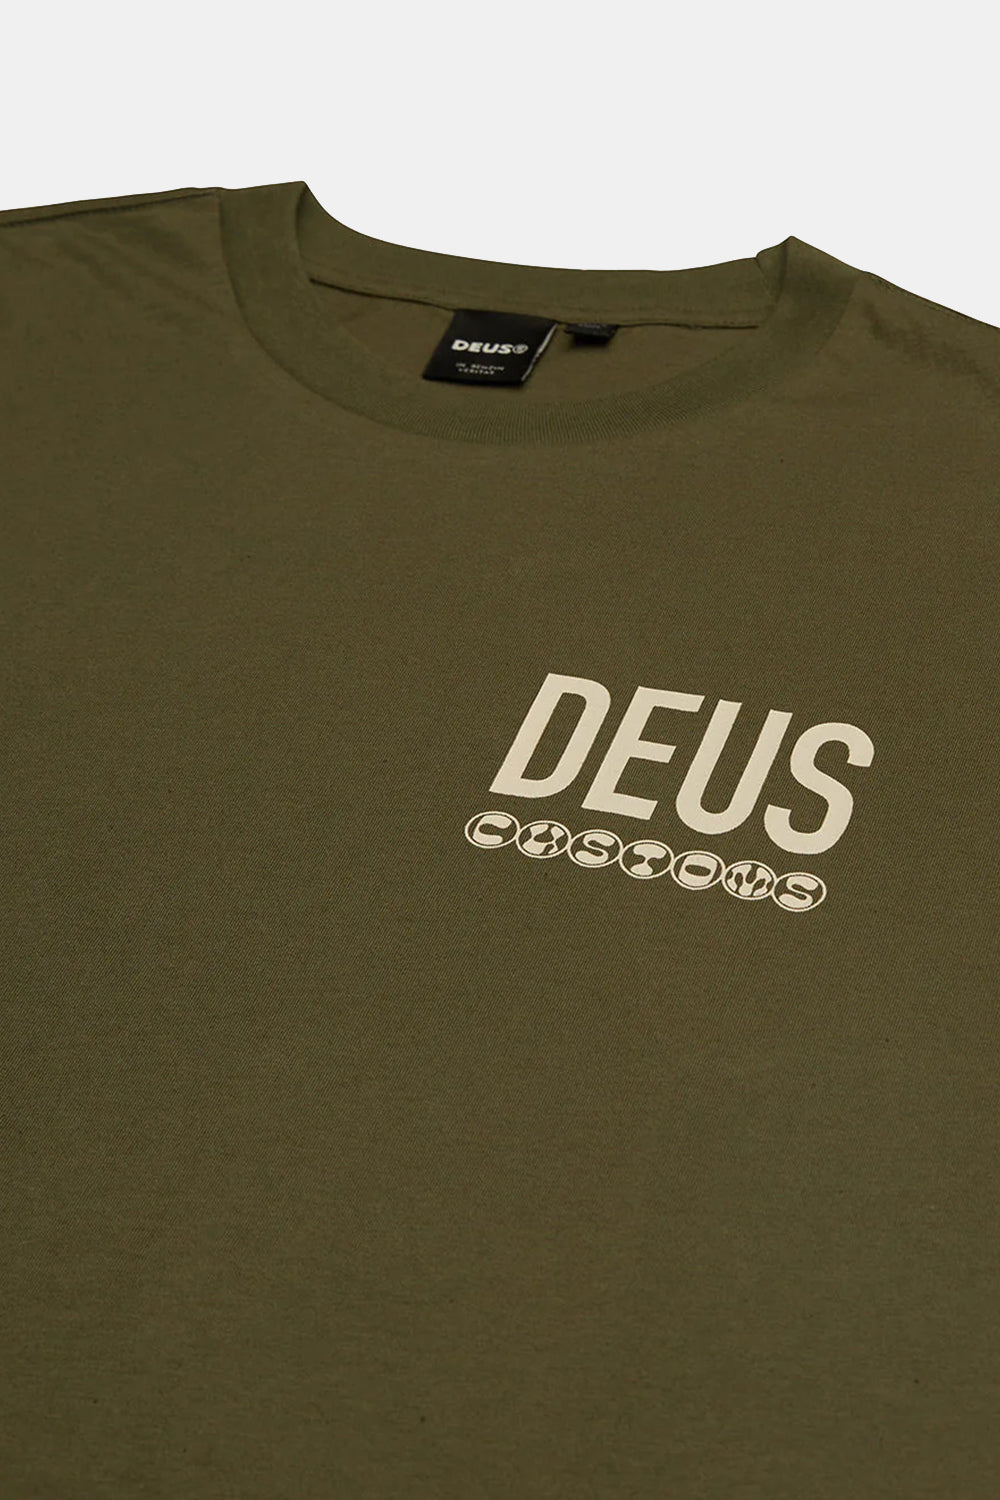 Deus Inline T-shirt (Clover)
